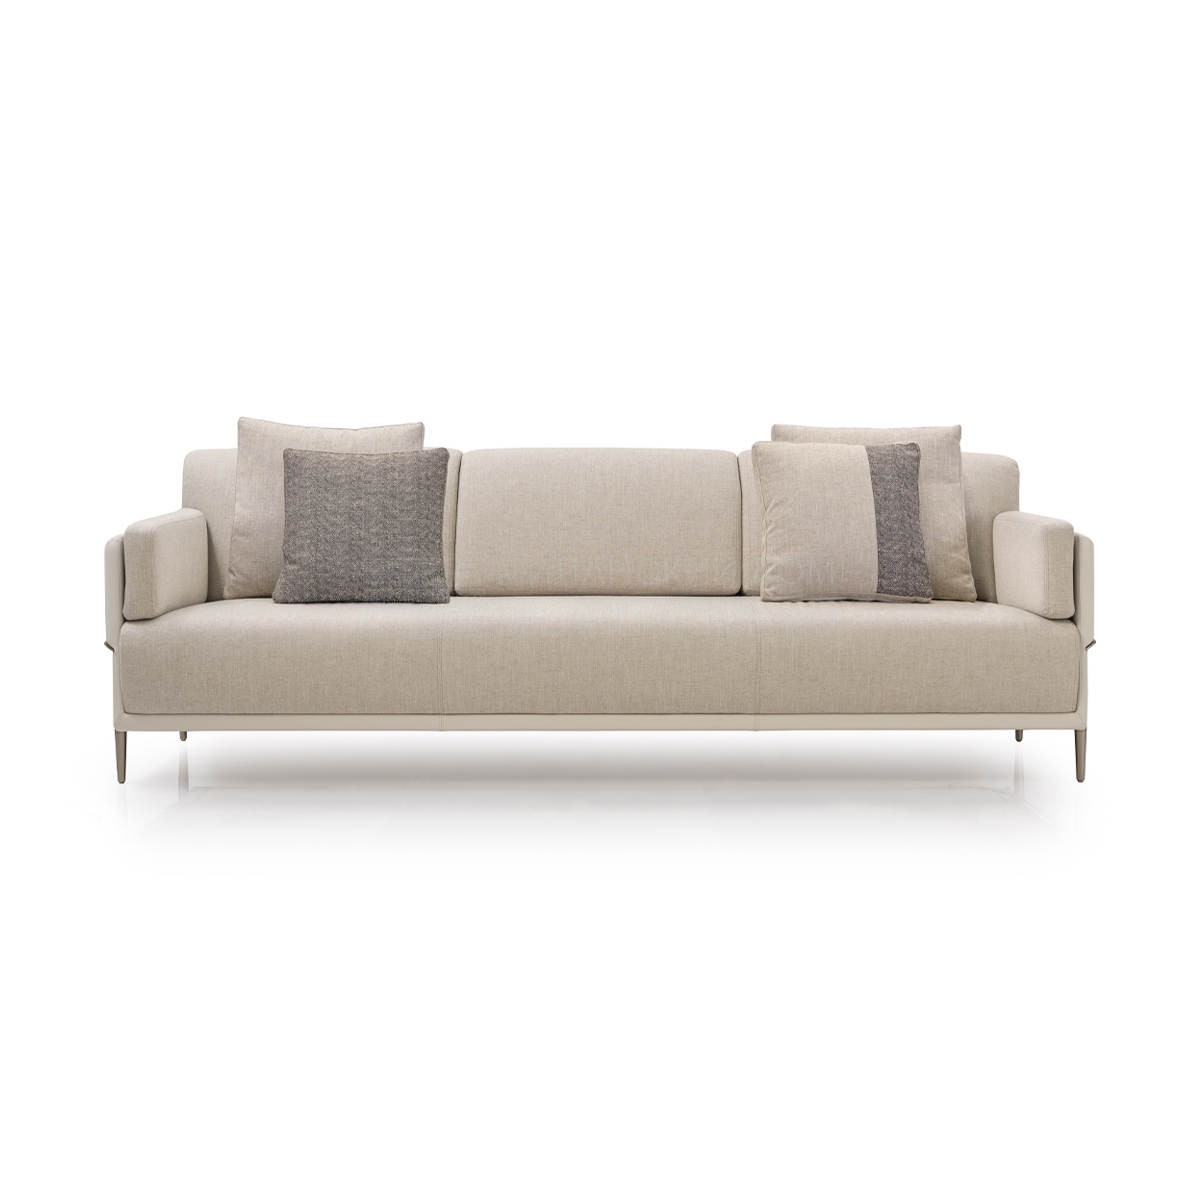 Прямой диван Zero sofa из Италии фабрики TURRI